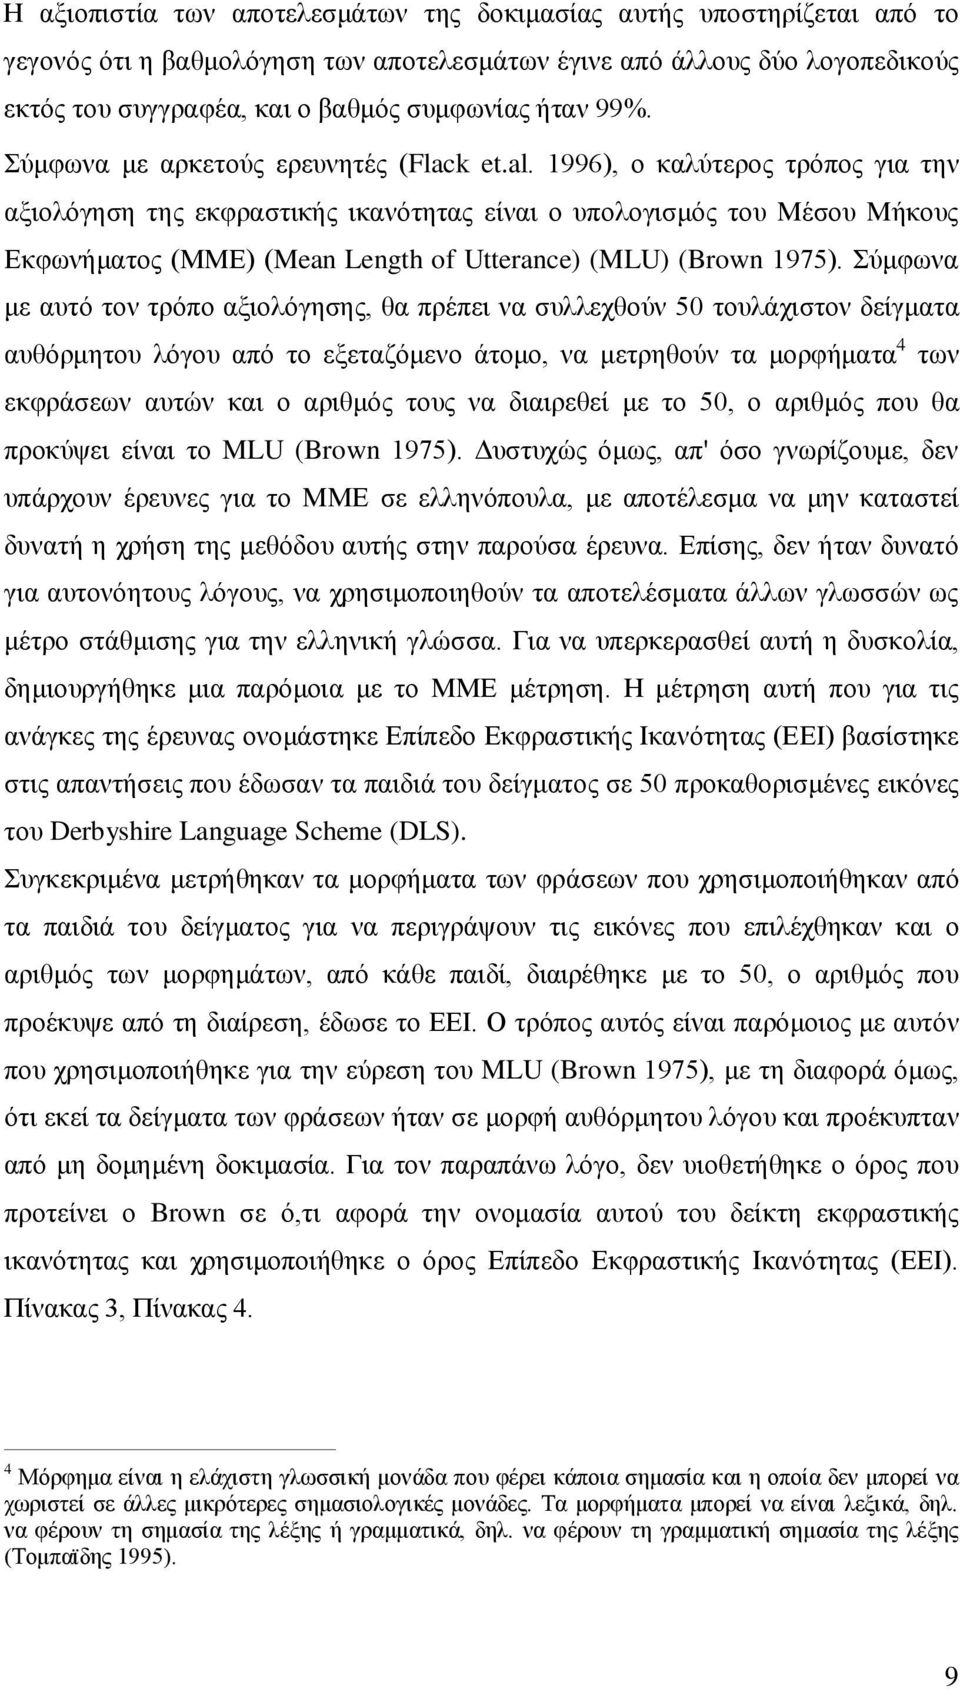 1996), ο καλύτερος τρόπος για την αξιολόγηση της εκφραστικής ικανότητας είναι ο υπολογισμός του Μέσου Μήκους Εκφωνήματος (ΜΜΕ) (Mean Length of Utterance) (MLU) (Brown 1975).